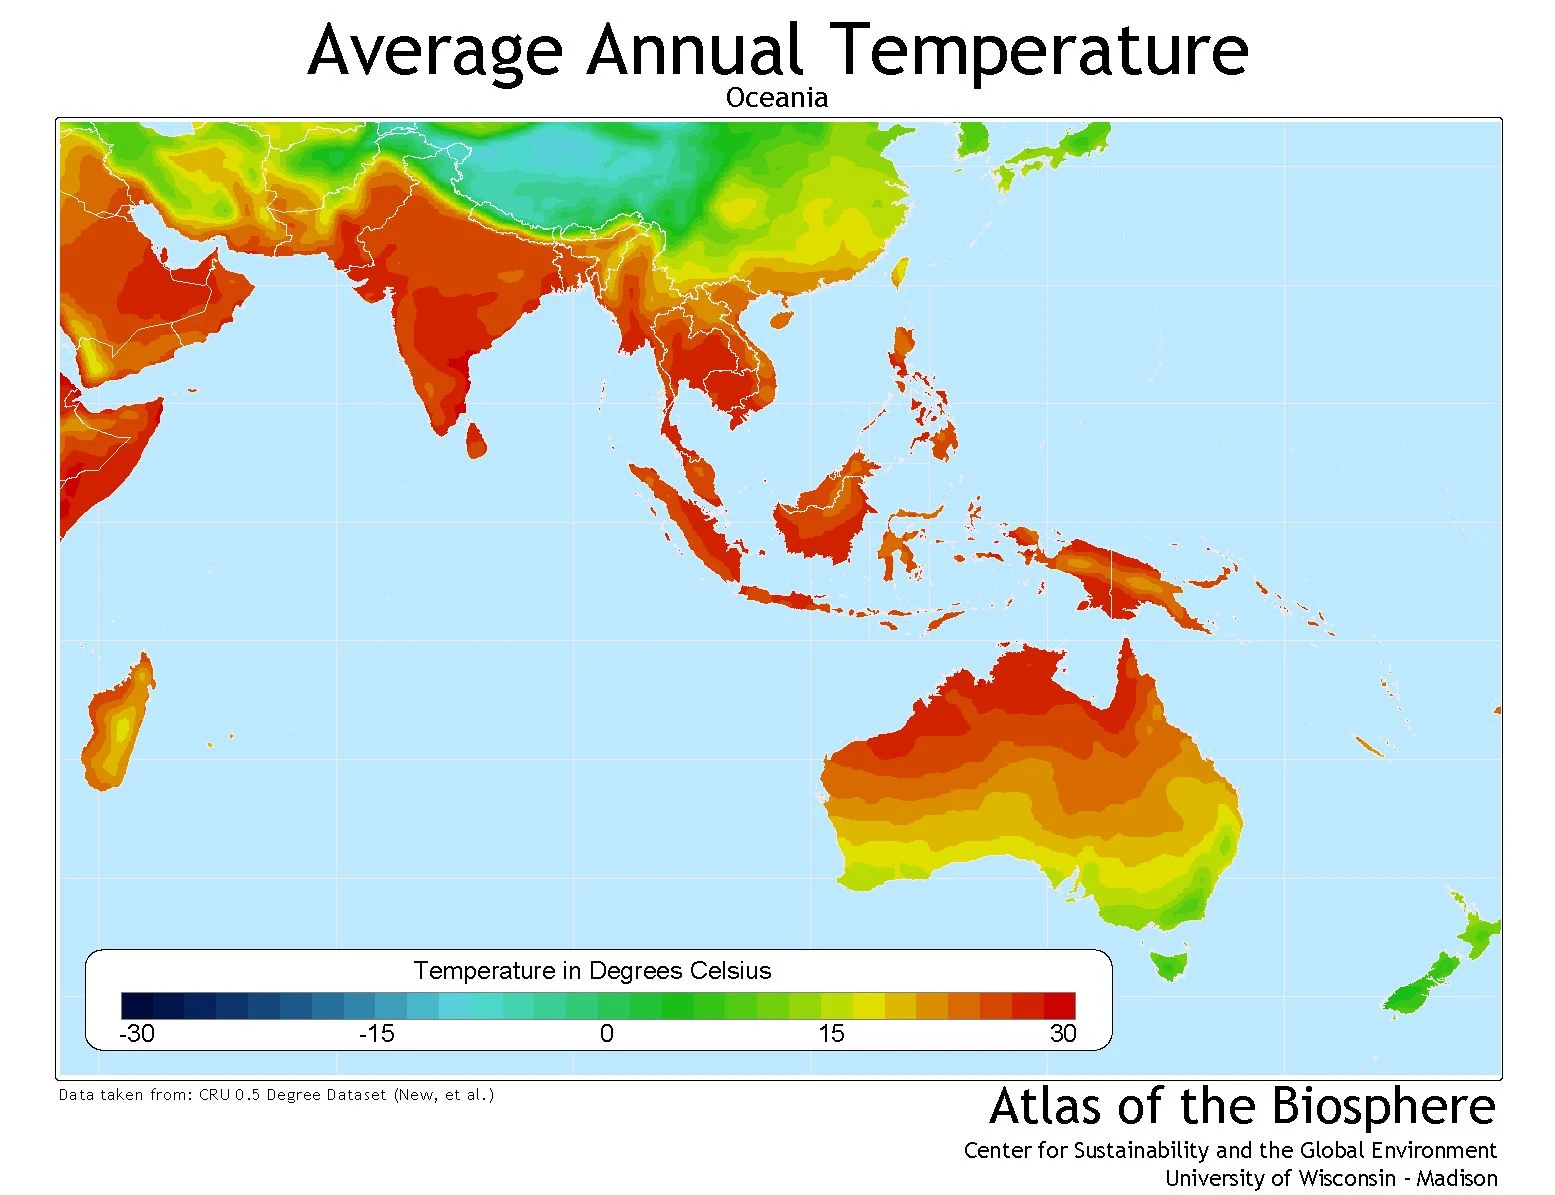 Australia and Oceania average annual temperature